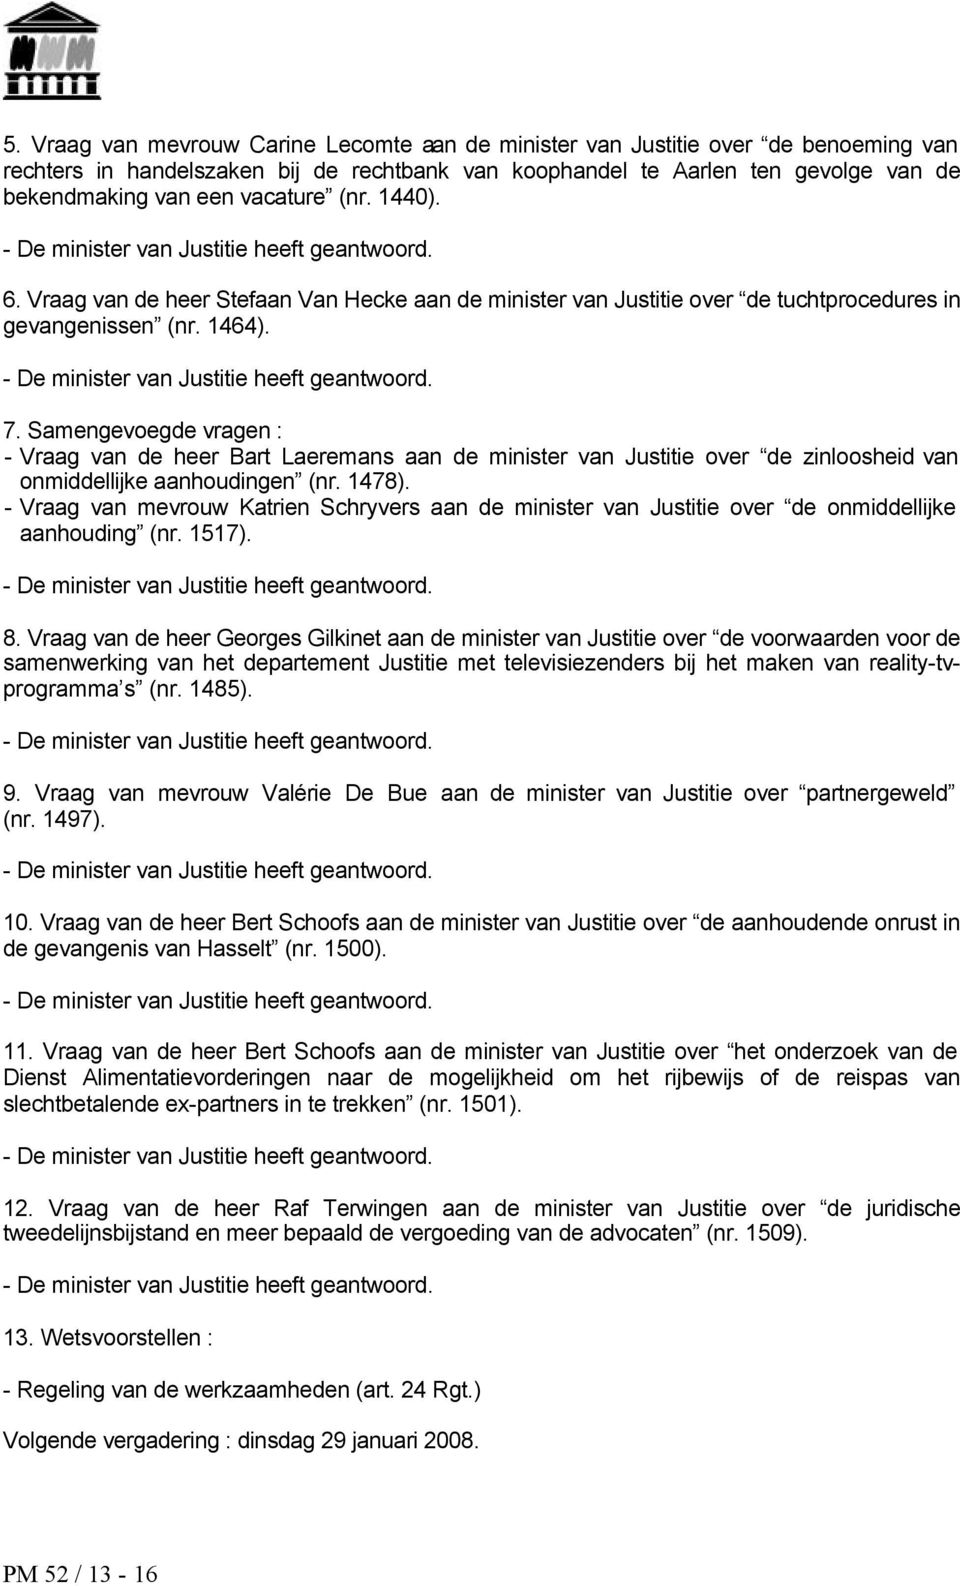 - De minister van Justitie heeft 7. Samengevoegde vragen : - Vraag van de heer Bart Laeremans aan de minister van Justitie over de zinloosheid van onmiddellijke aanhoudingen (nr. 1478).